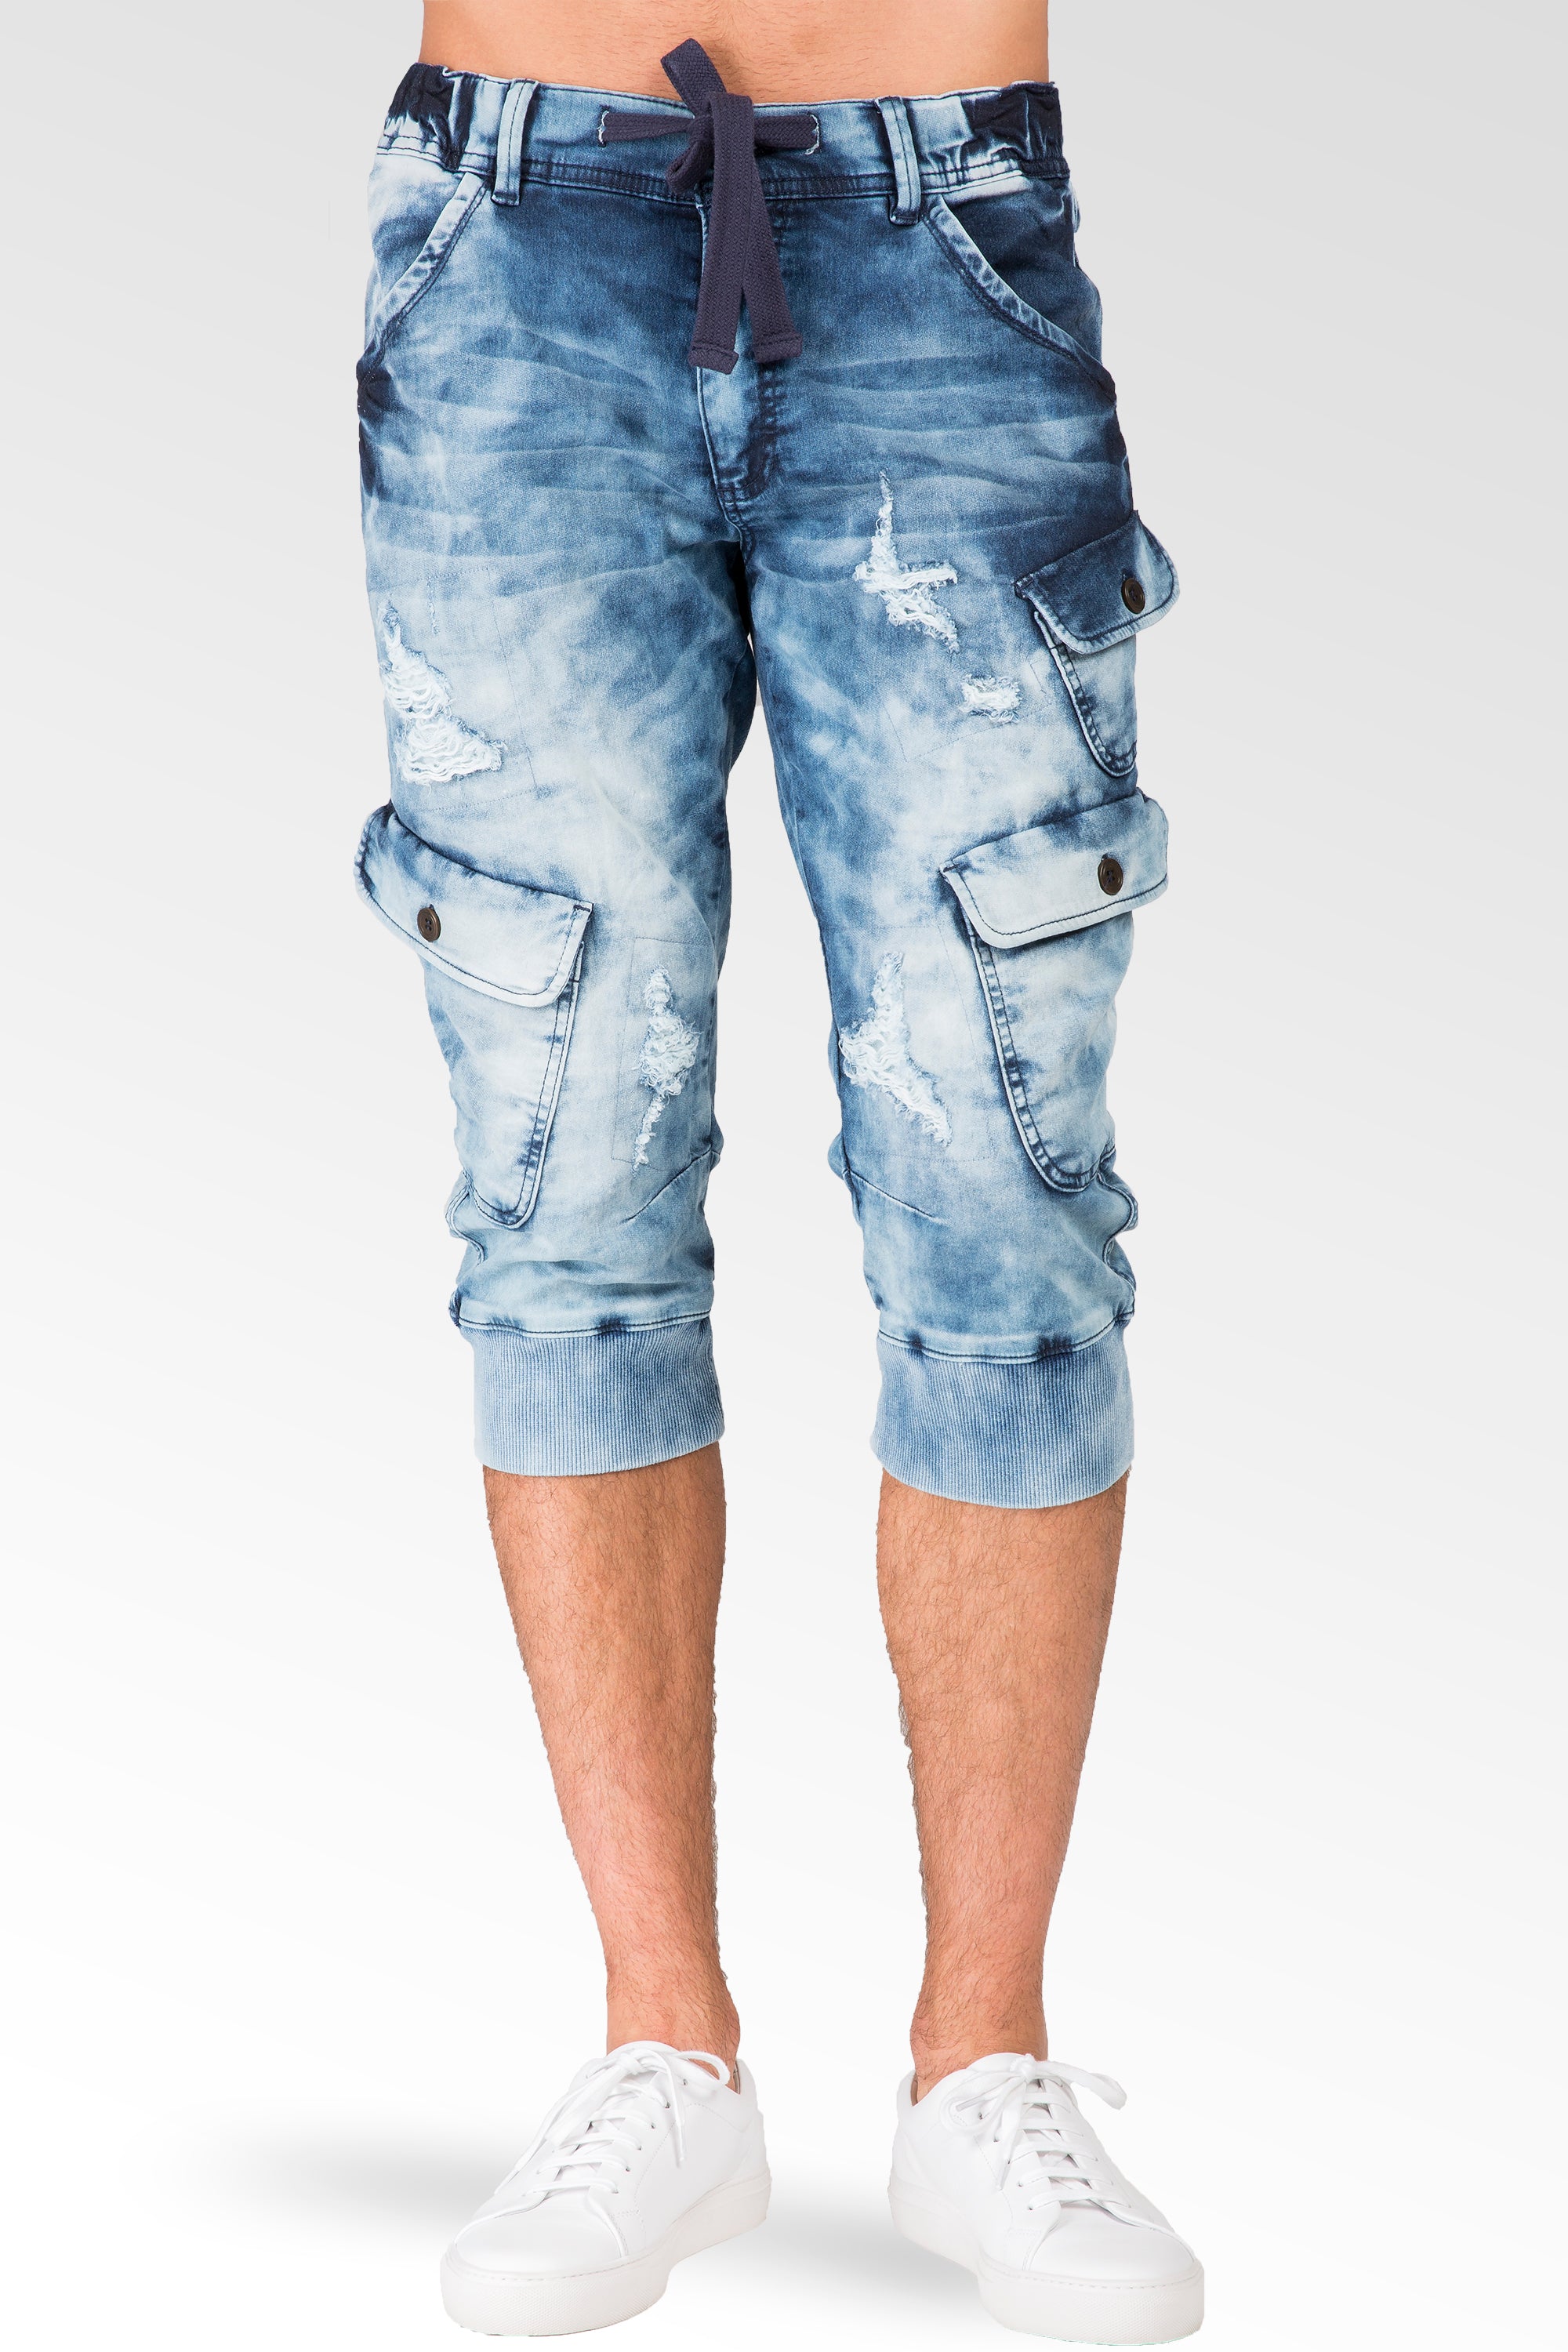 Men's Jeans Hip-hop Ripped Motorcycle Denim Pant Slim Stretch Plus Size  Cargo Pants Pencil Pants Capri Trouser - Walmart.com